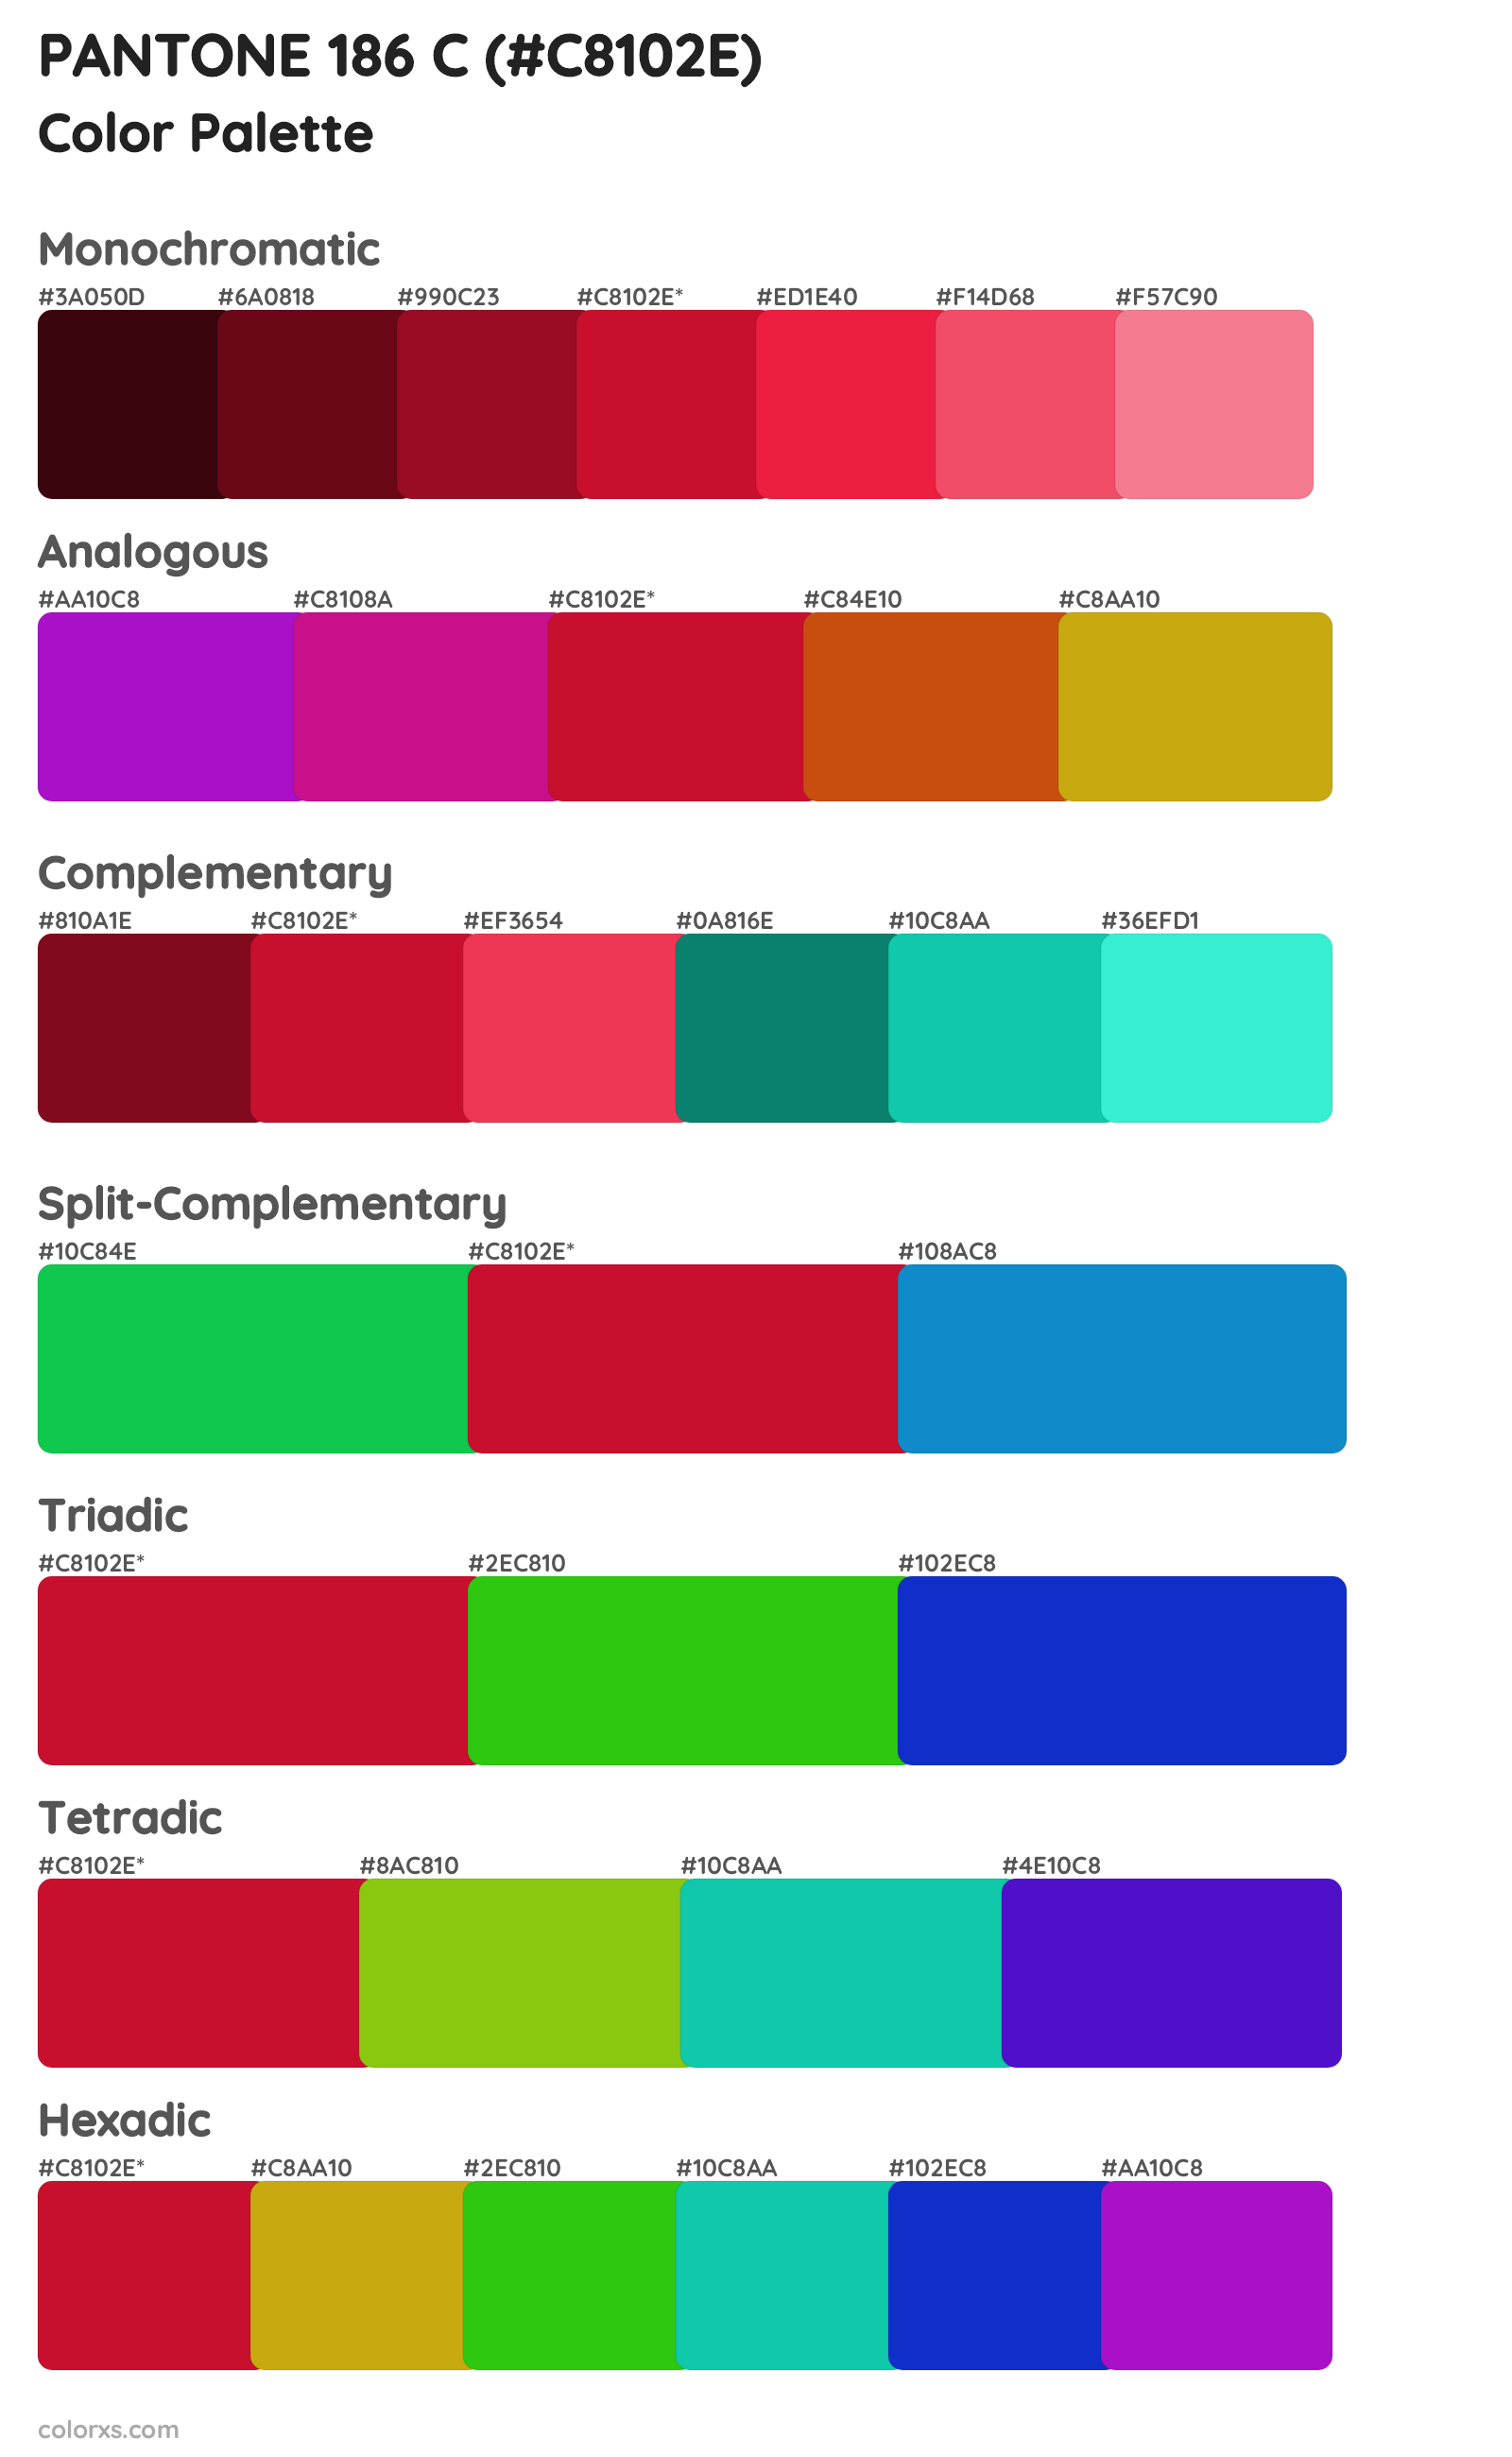 PANTONE 186 C Color Scheme Palettes